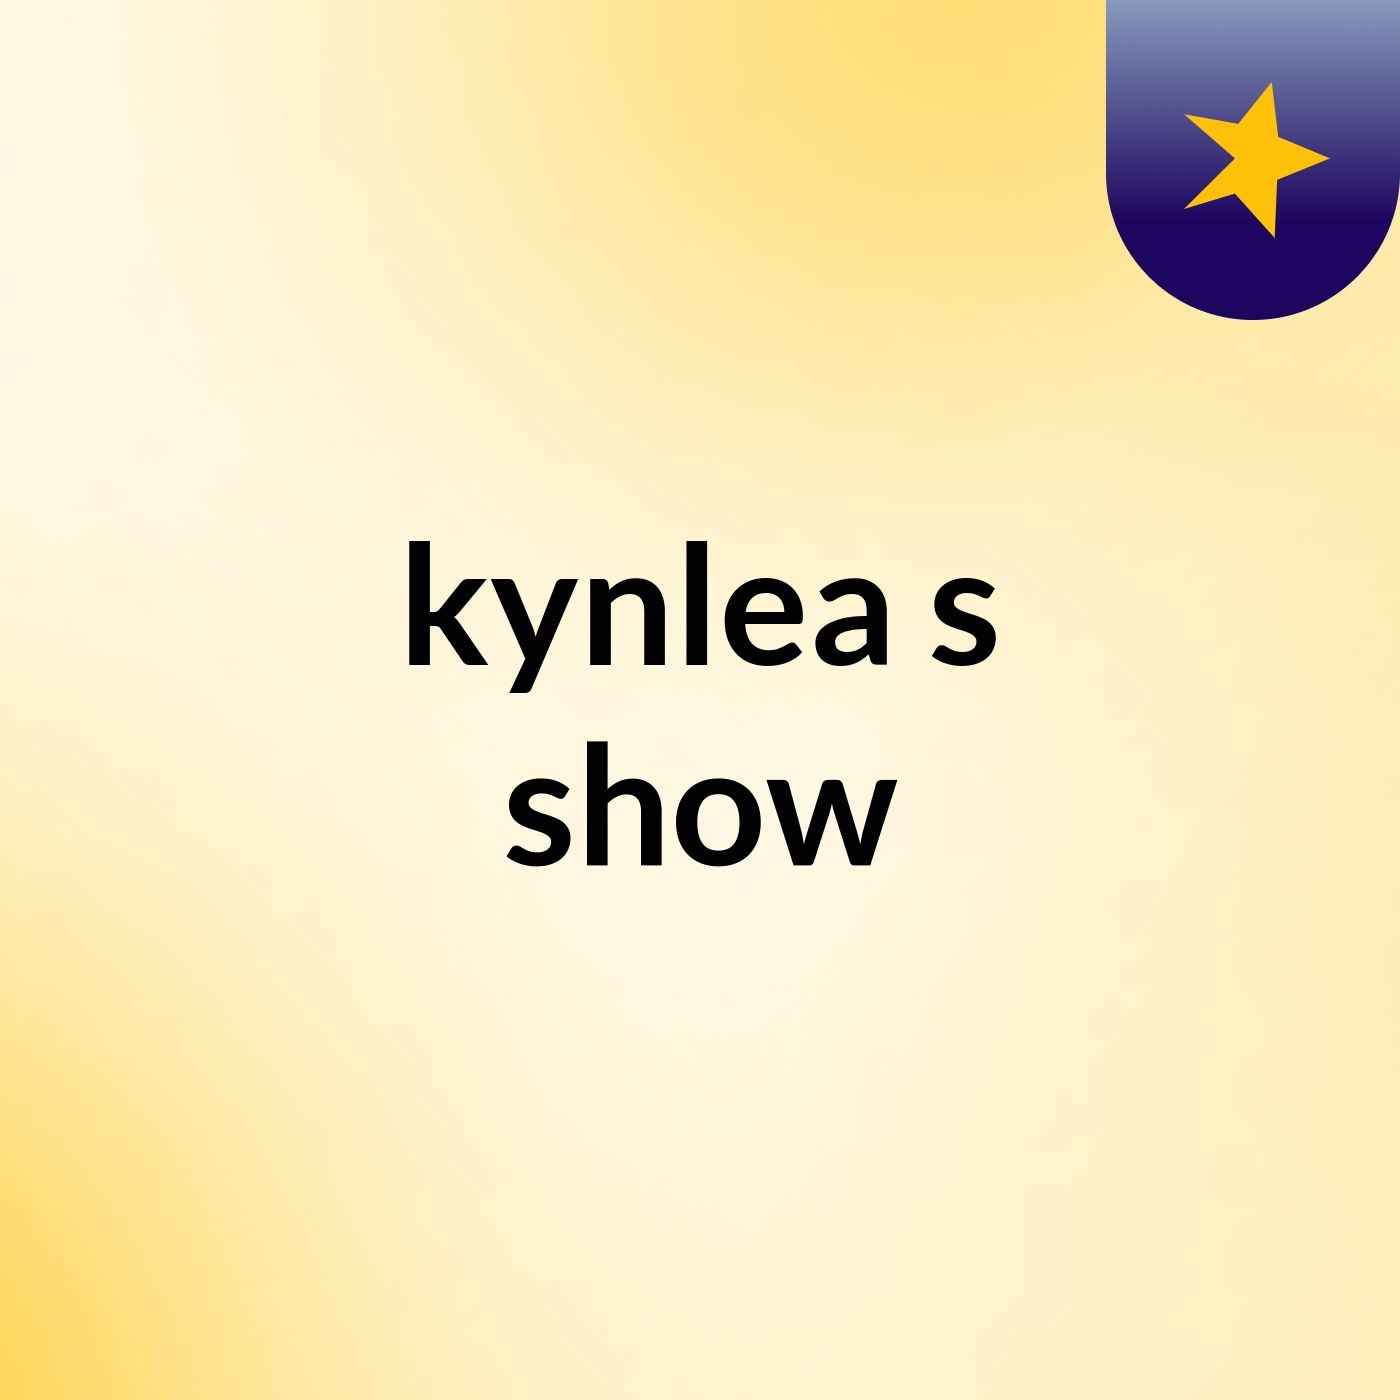 kynlea's show